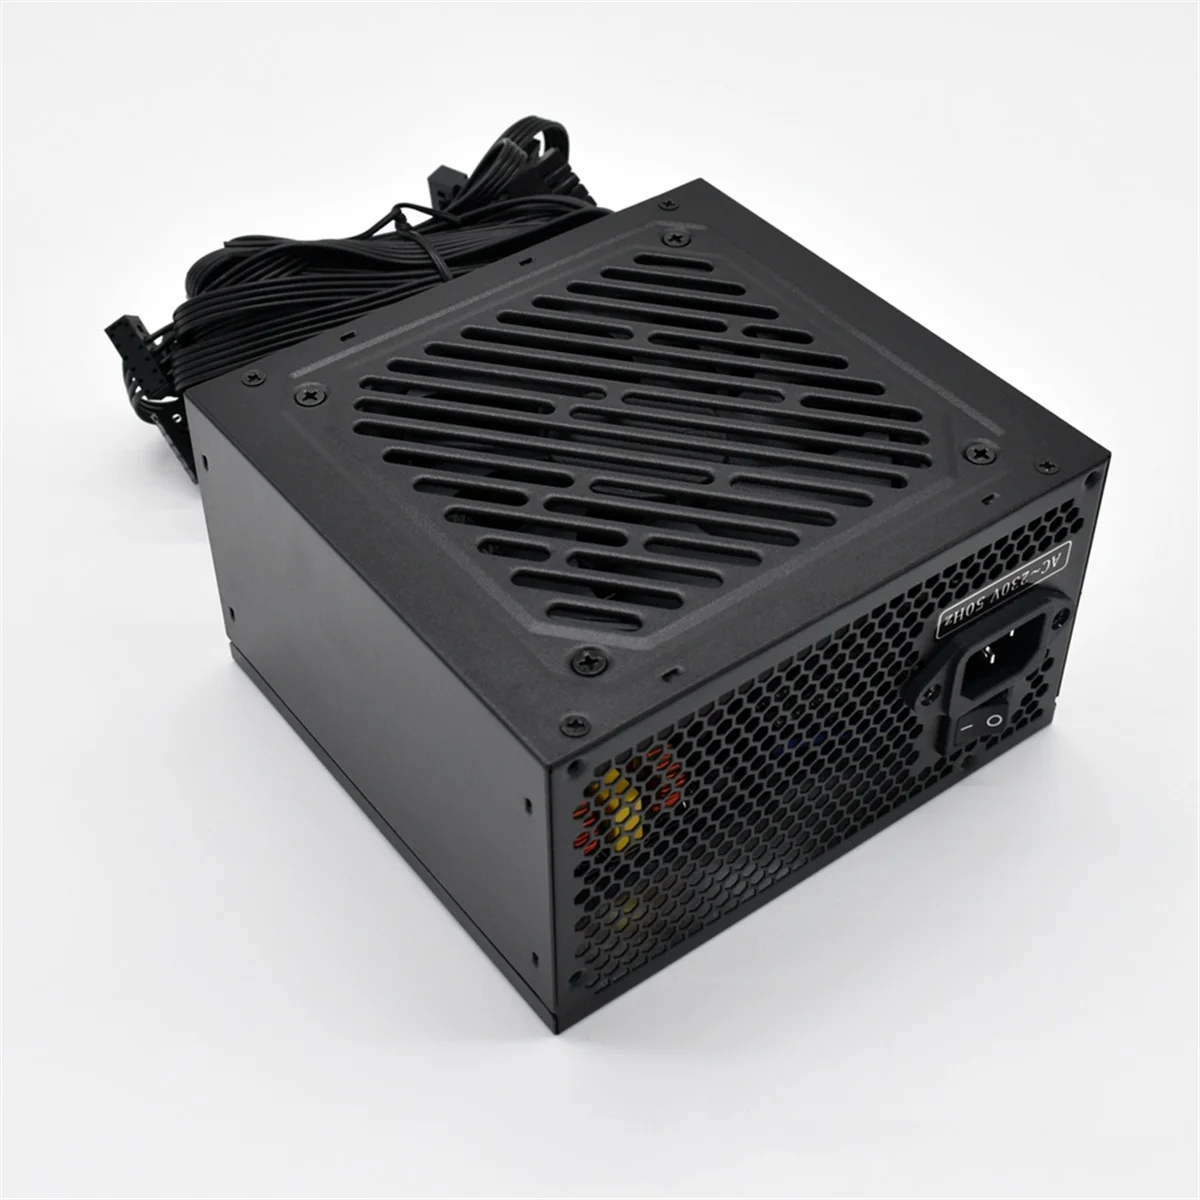 

Блок питания ATX 500 Вт, номинальный источник питания (пик 500 Вт), два уровня EMI 750 В переменного тока/230 В, игровой настольный компьютер